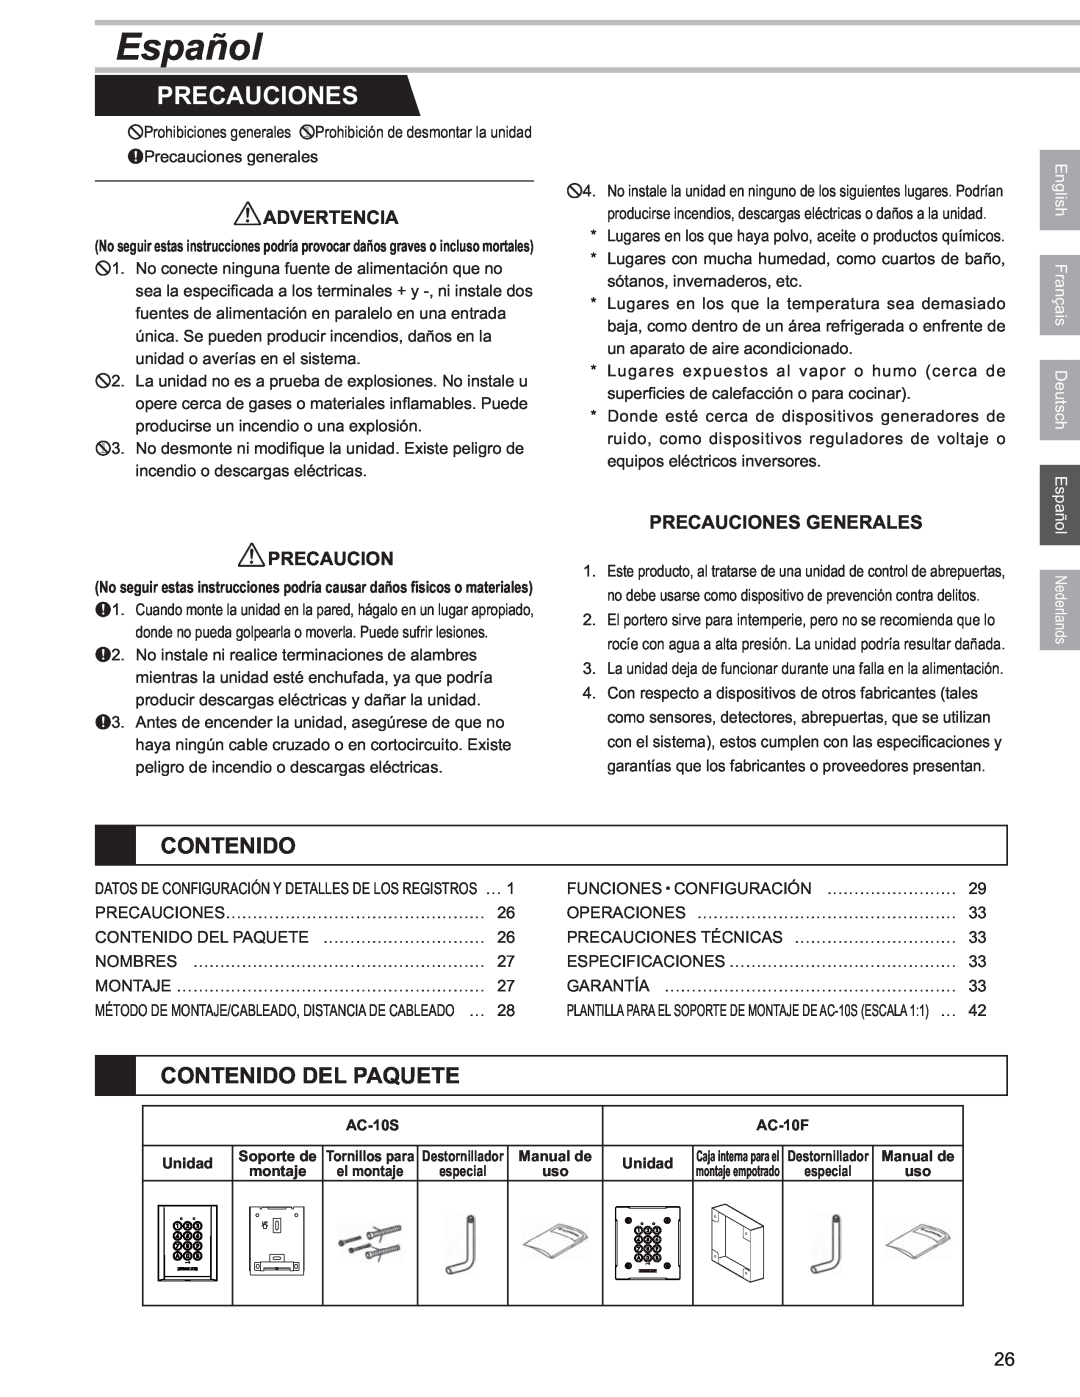 Aiphone AC-10S, AC-10F operation manual Español, Contenido Del Paquete, Advertencia, Precauciones Generales 